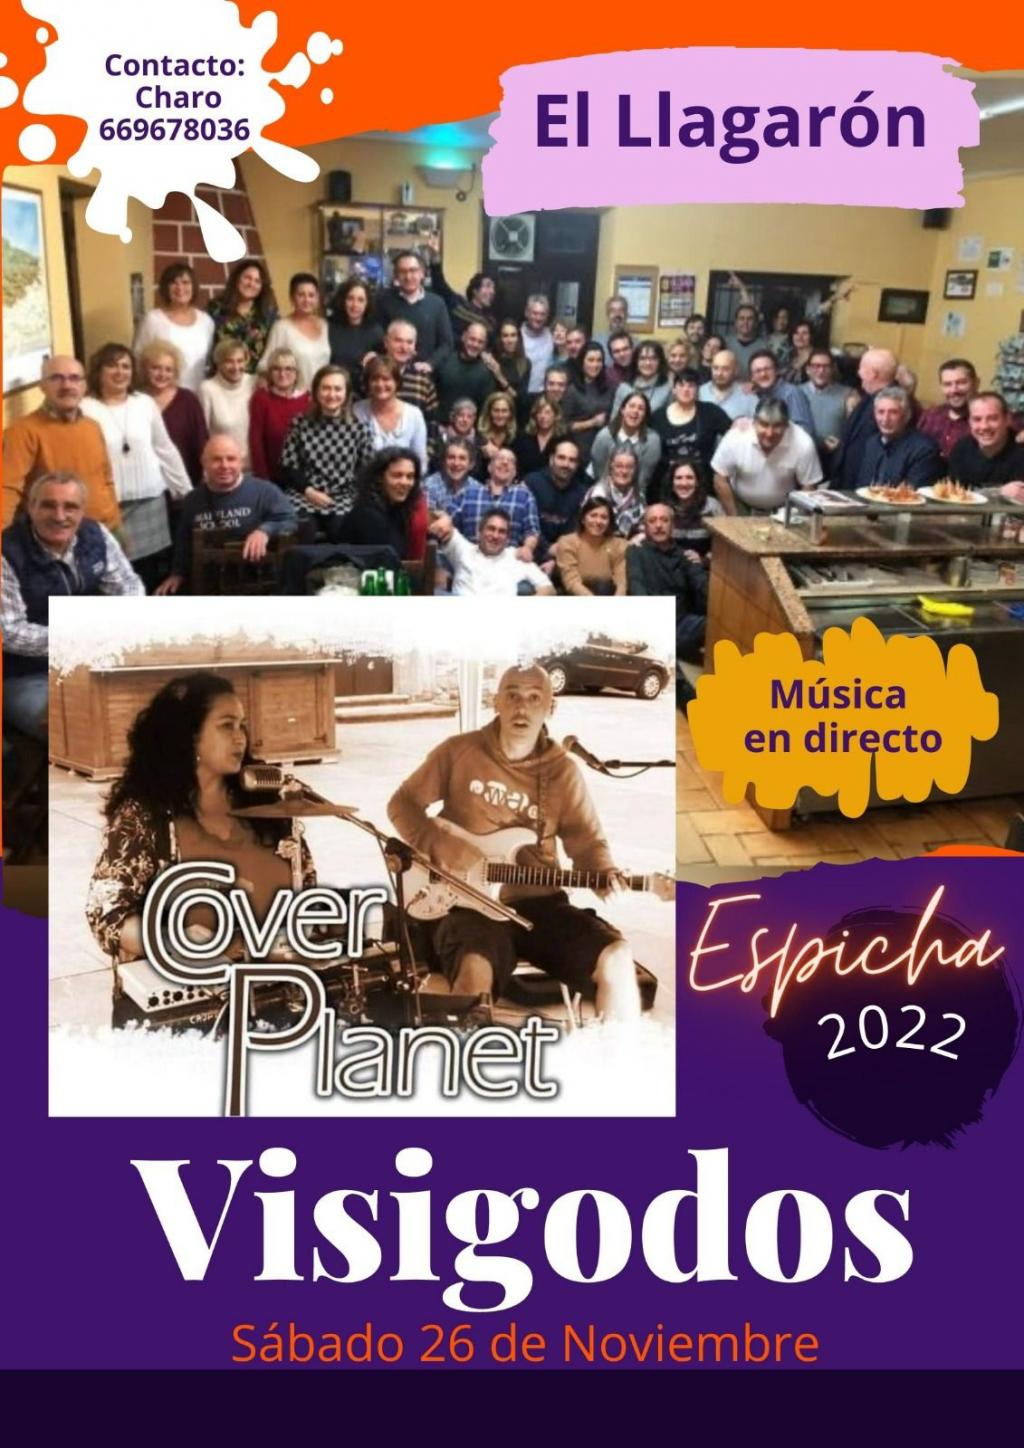 El Tapin - Los Visigodos de Valdesoto organizan su espicha anual en El Llagarón